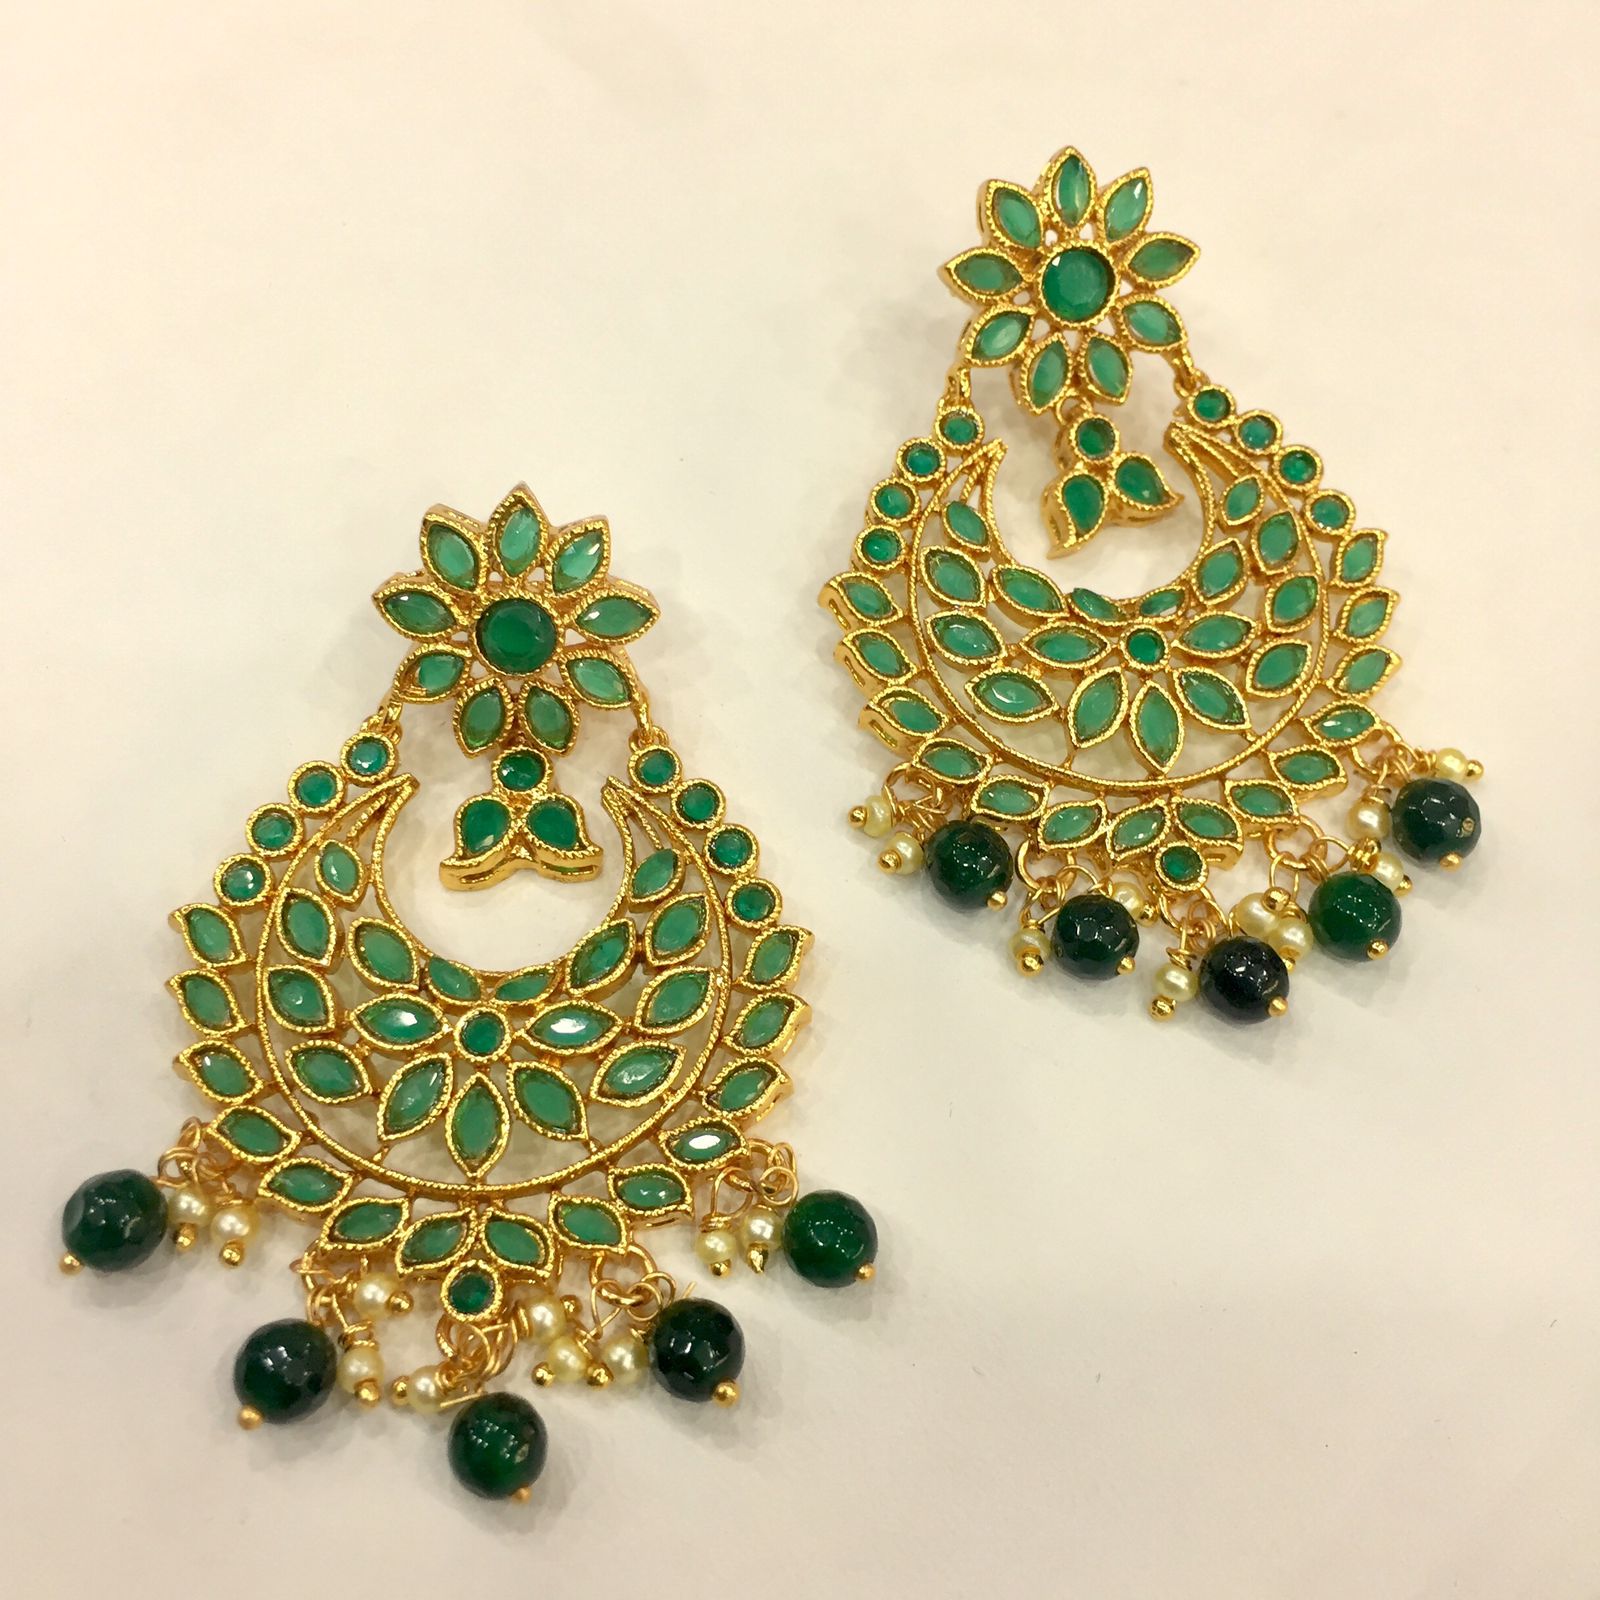 Green Gold Earrings Women | Engagement Jewelry | Big Party Earring |  Crystal Earrings - Dangle Earrings - Aliexpress